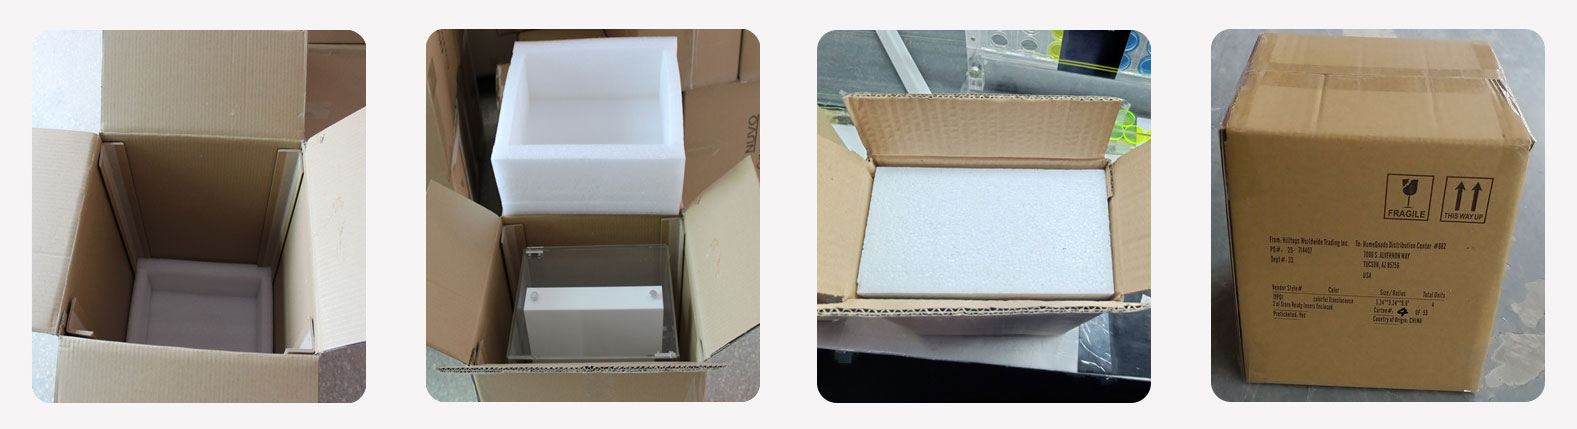 embalaje de caja de almacenamiento de acrílico